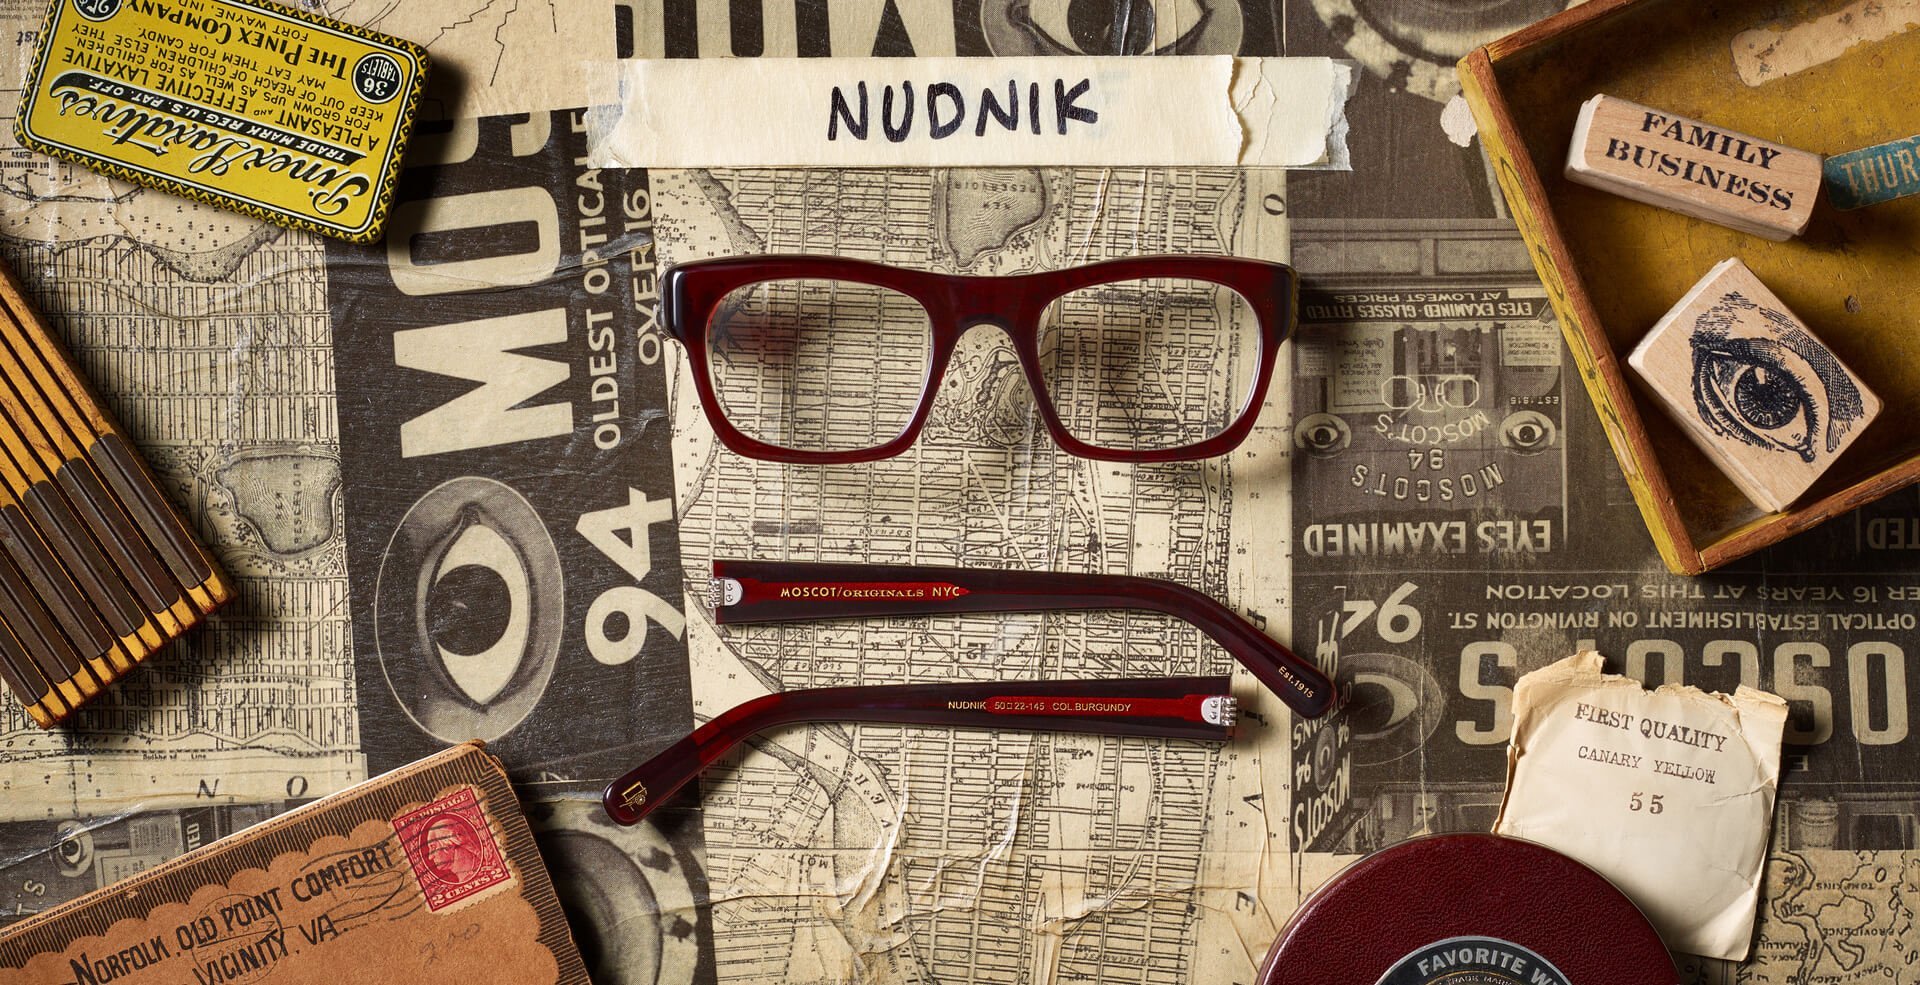 The NUDNIK